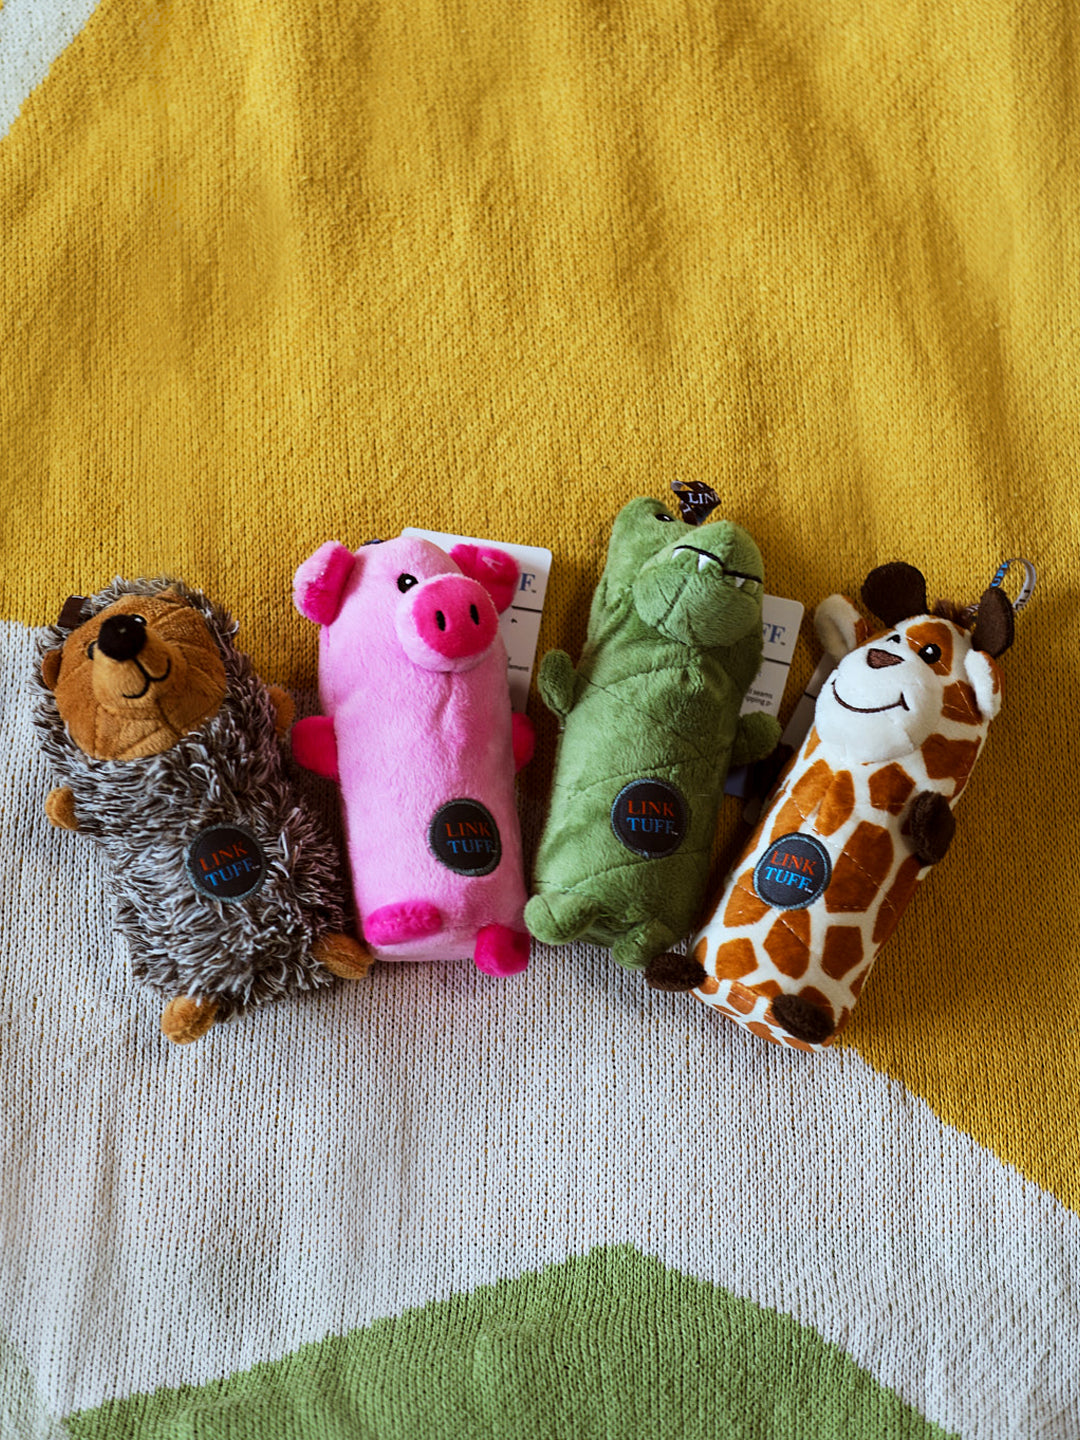 動物寶寶瓶子玩具